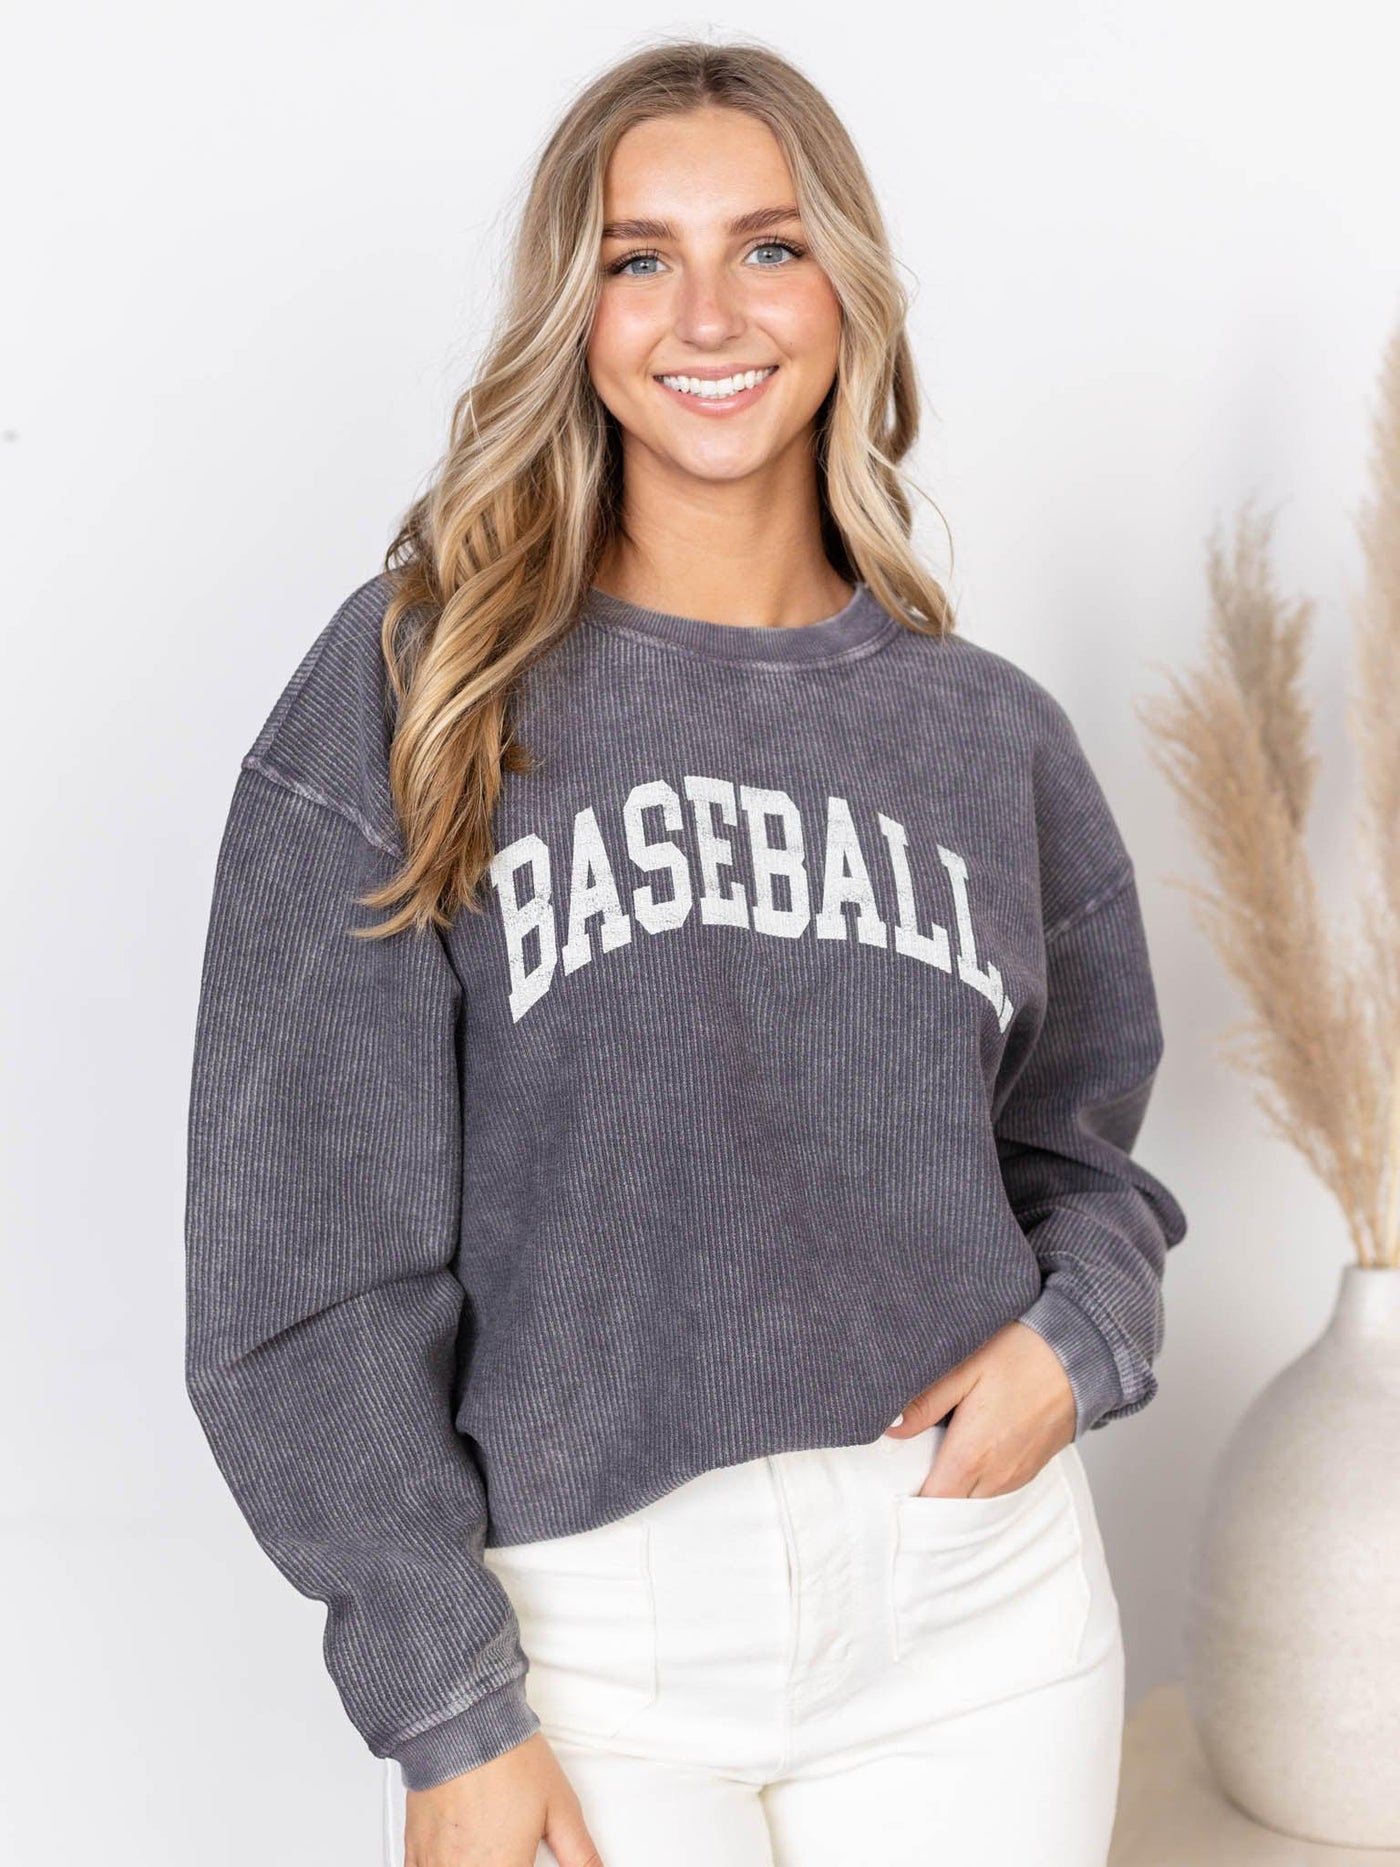 baseball sweatshirt